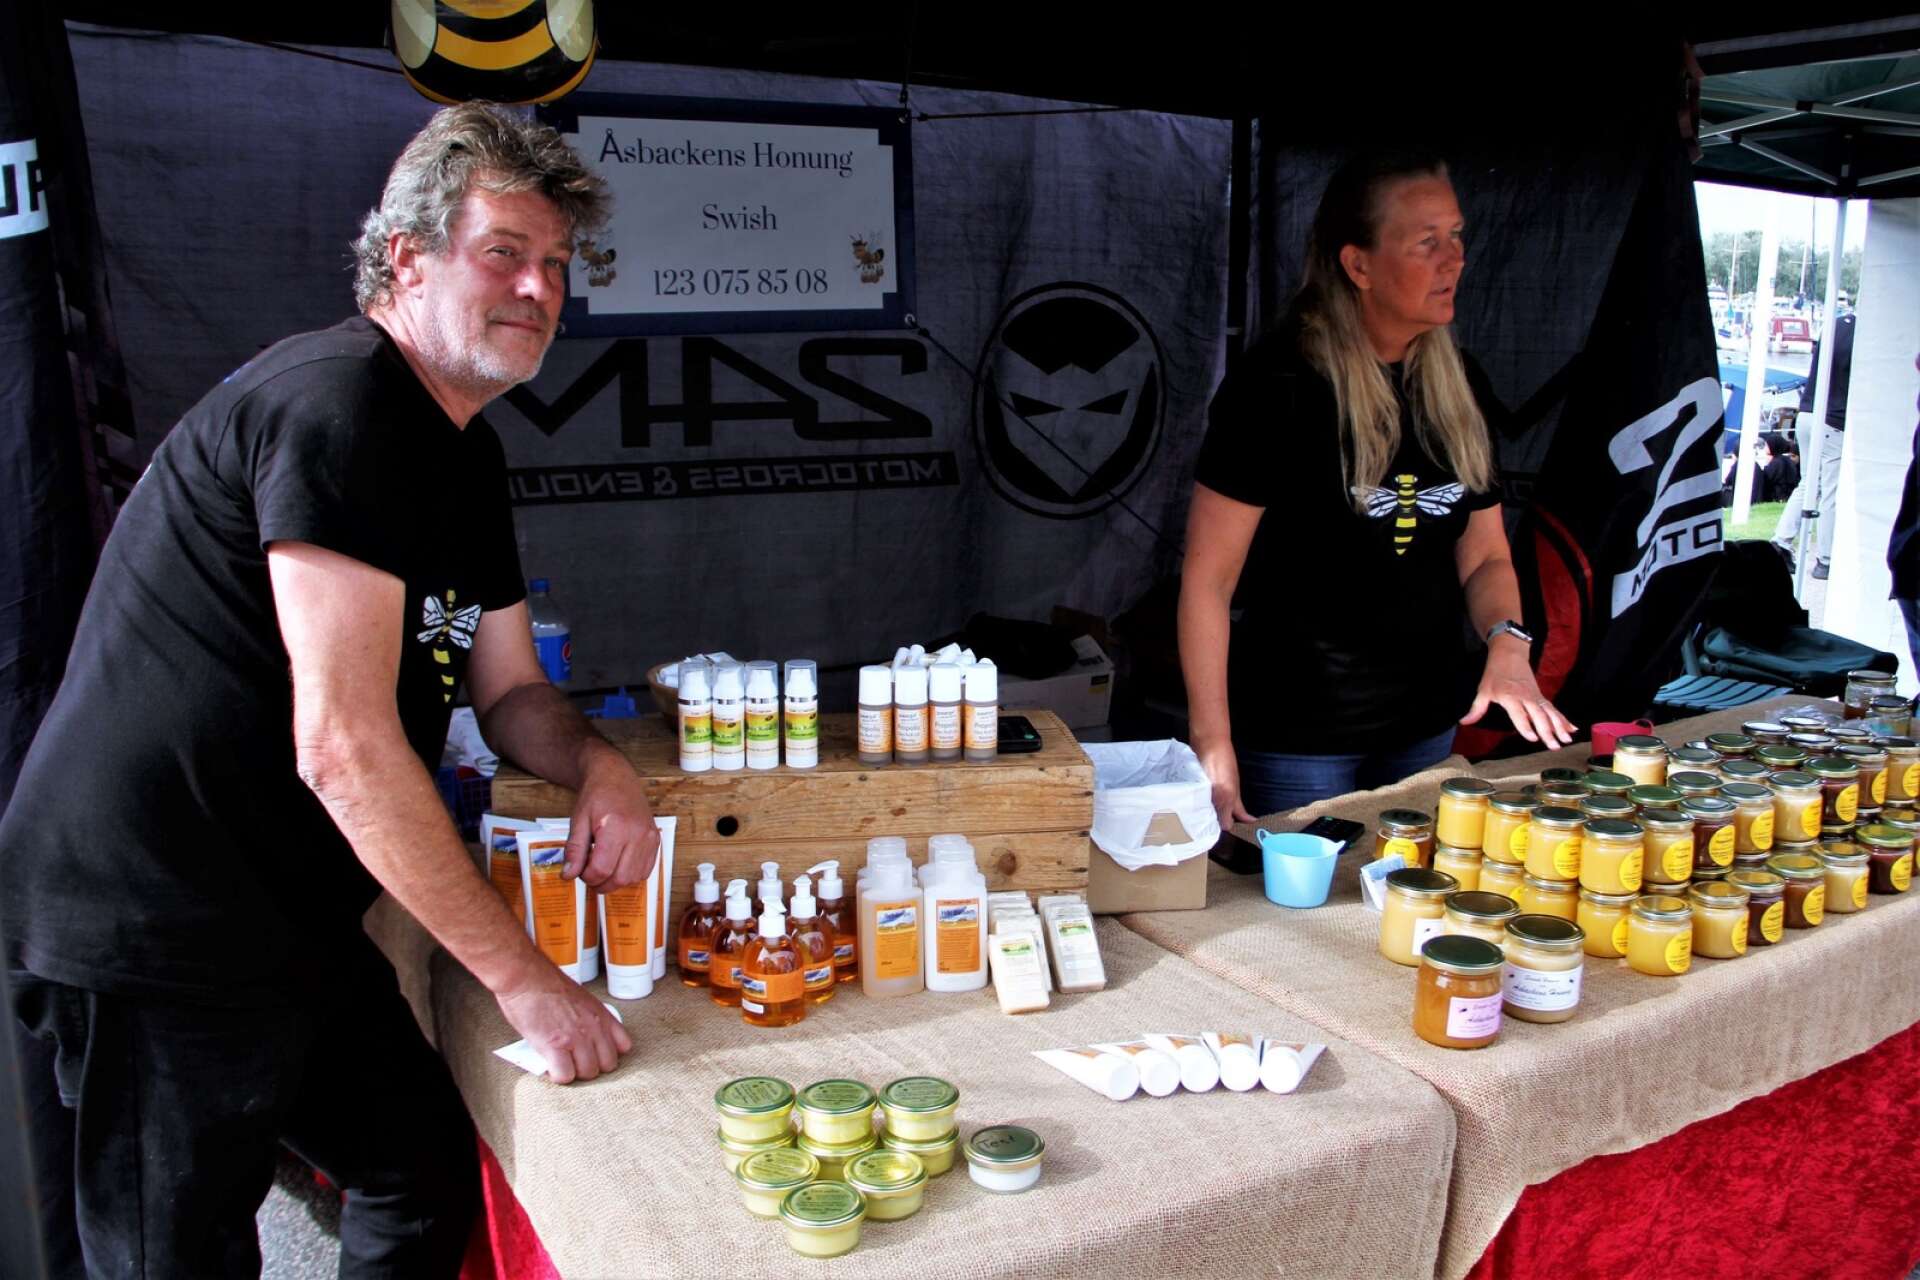 Handkrämer, smaksatt honung och andra honungs- och bivaxprodukter såldes av PG Karlsson och Pernilla Appelquist från Bohus.